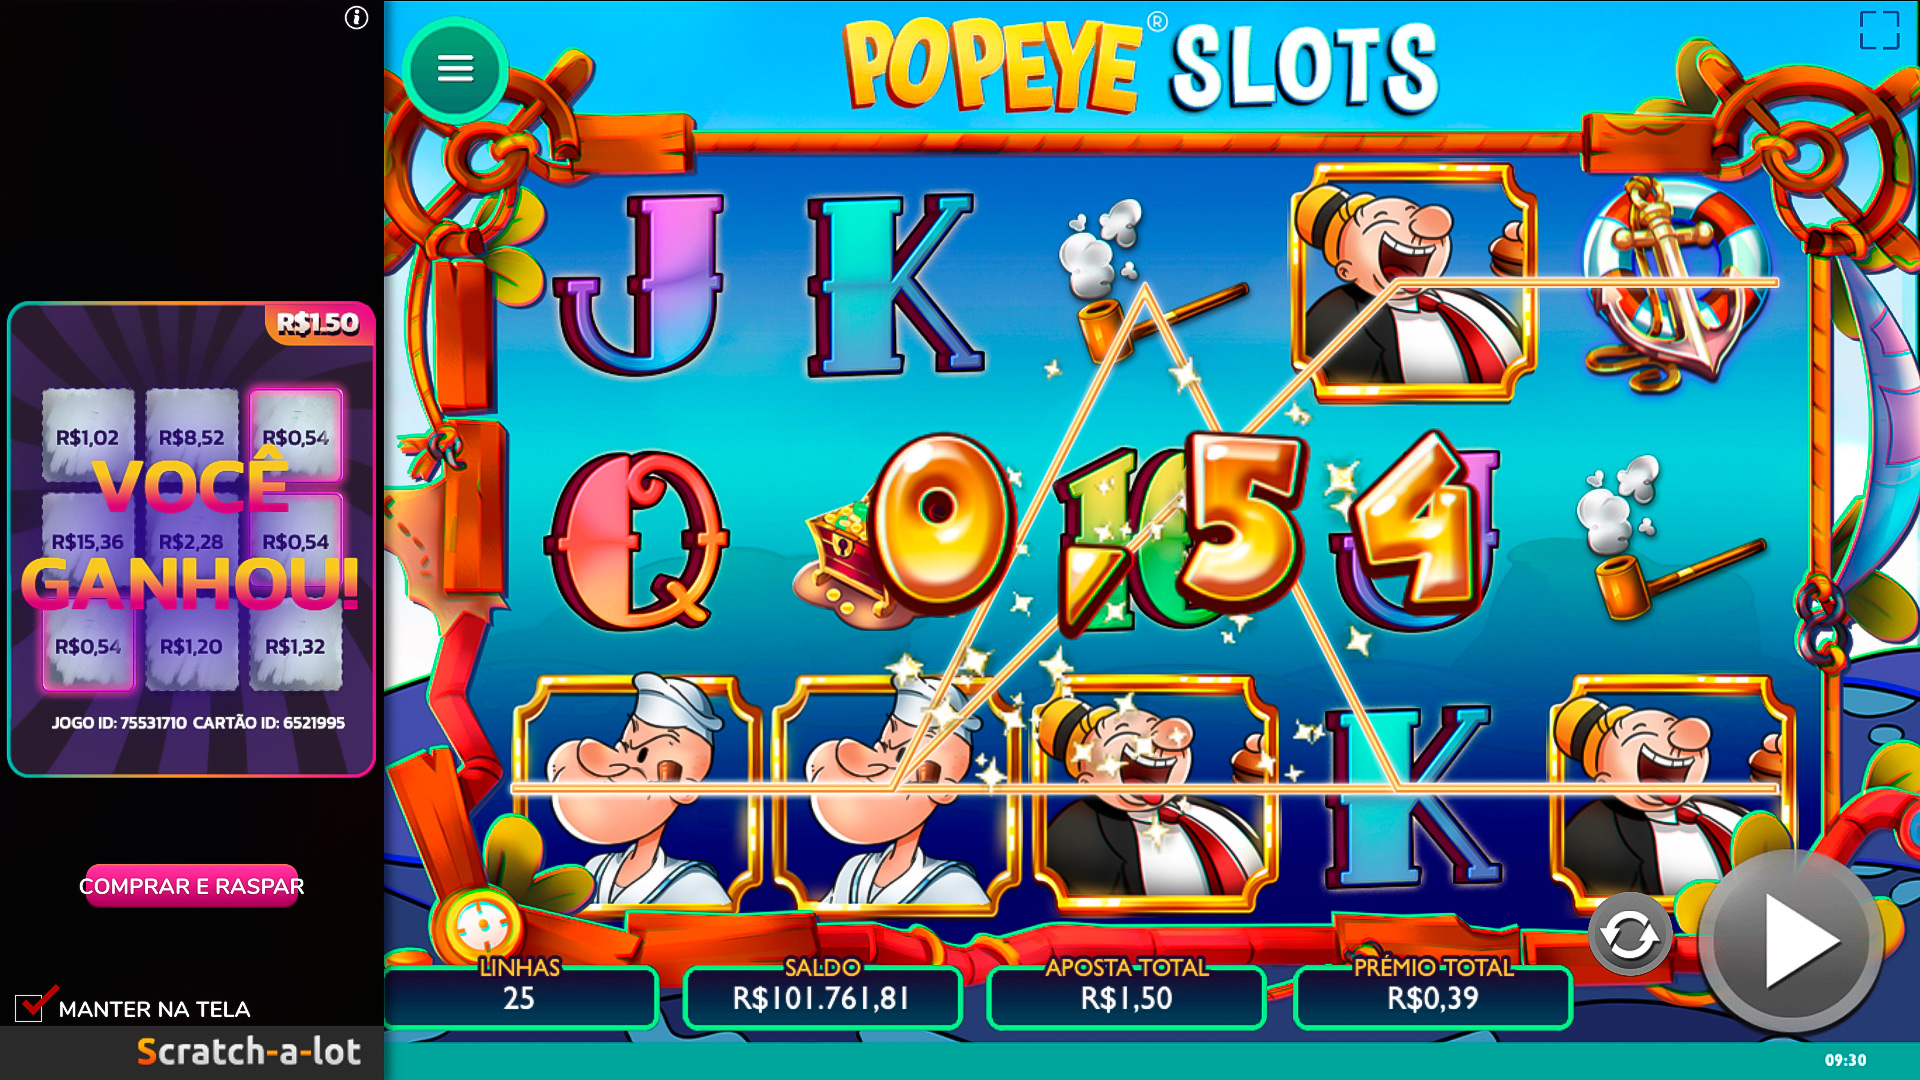 Popeye nÃ£o tem nada a ver com casinos. Captura de tela